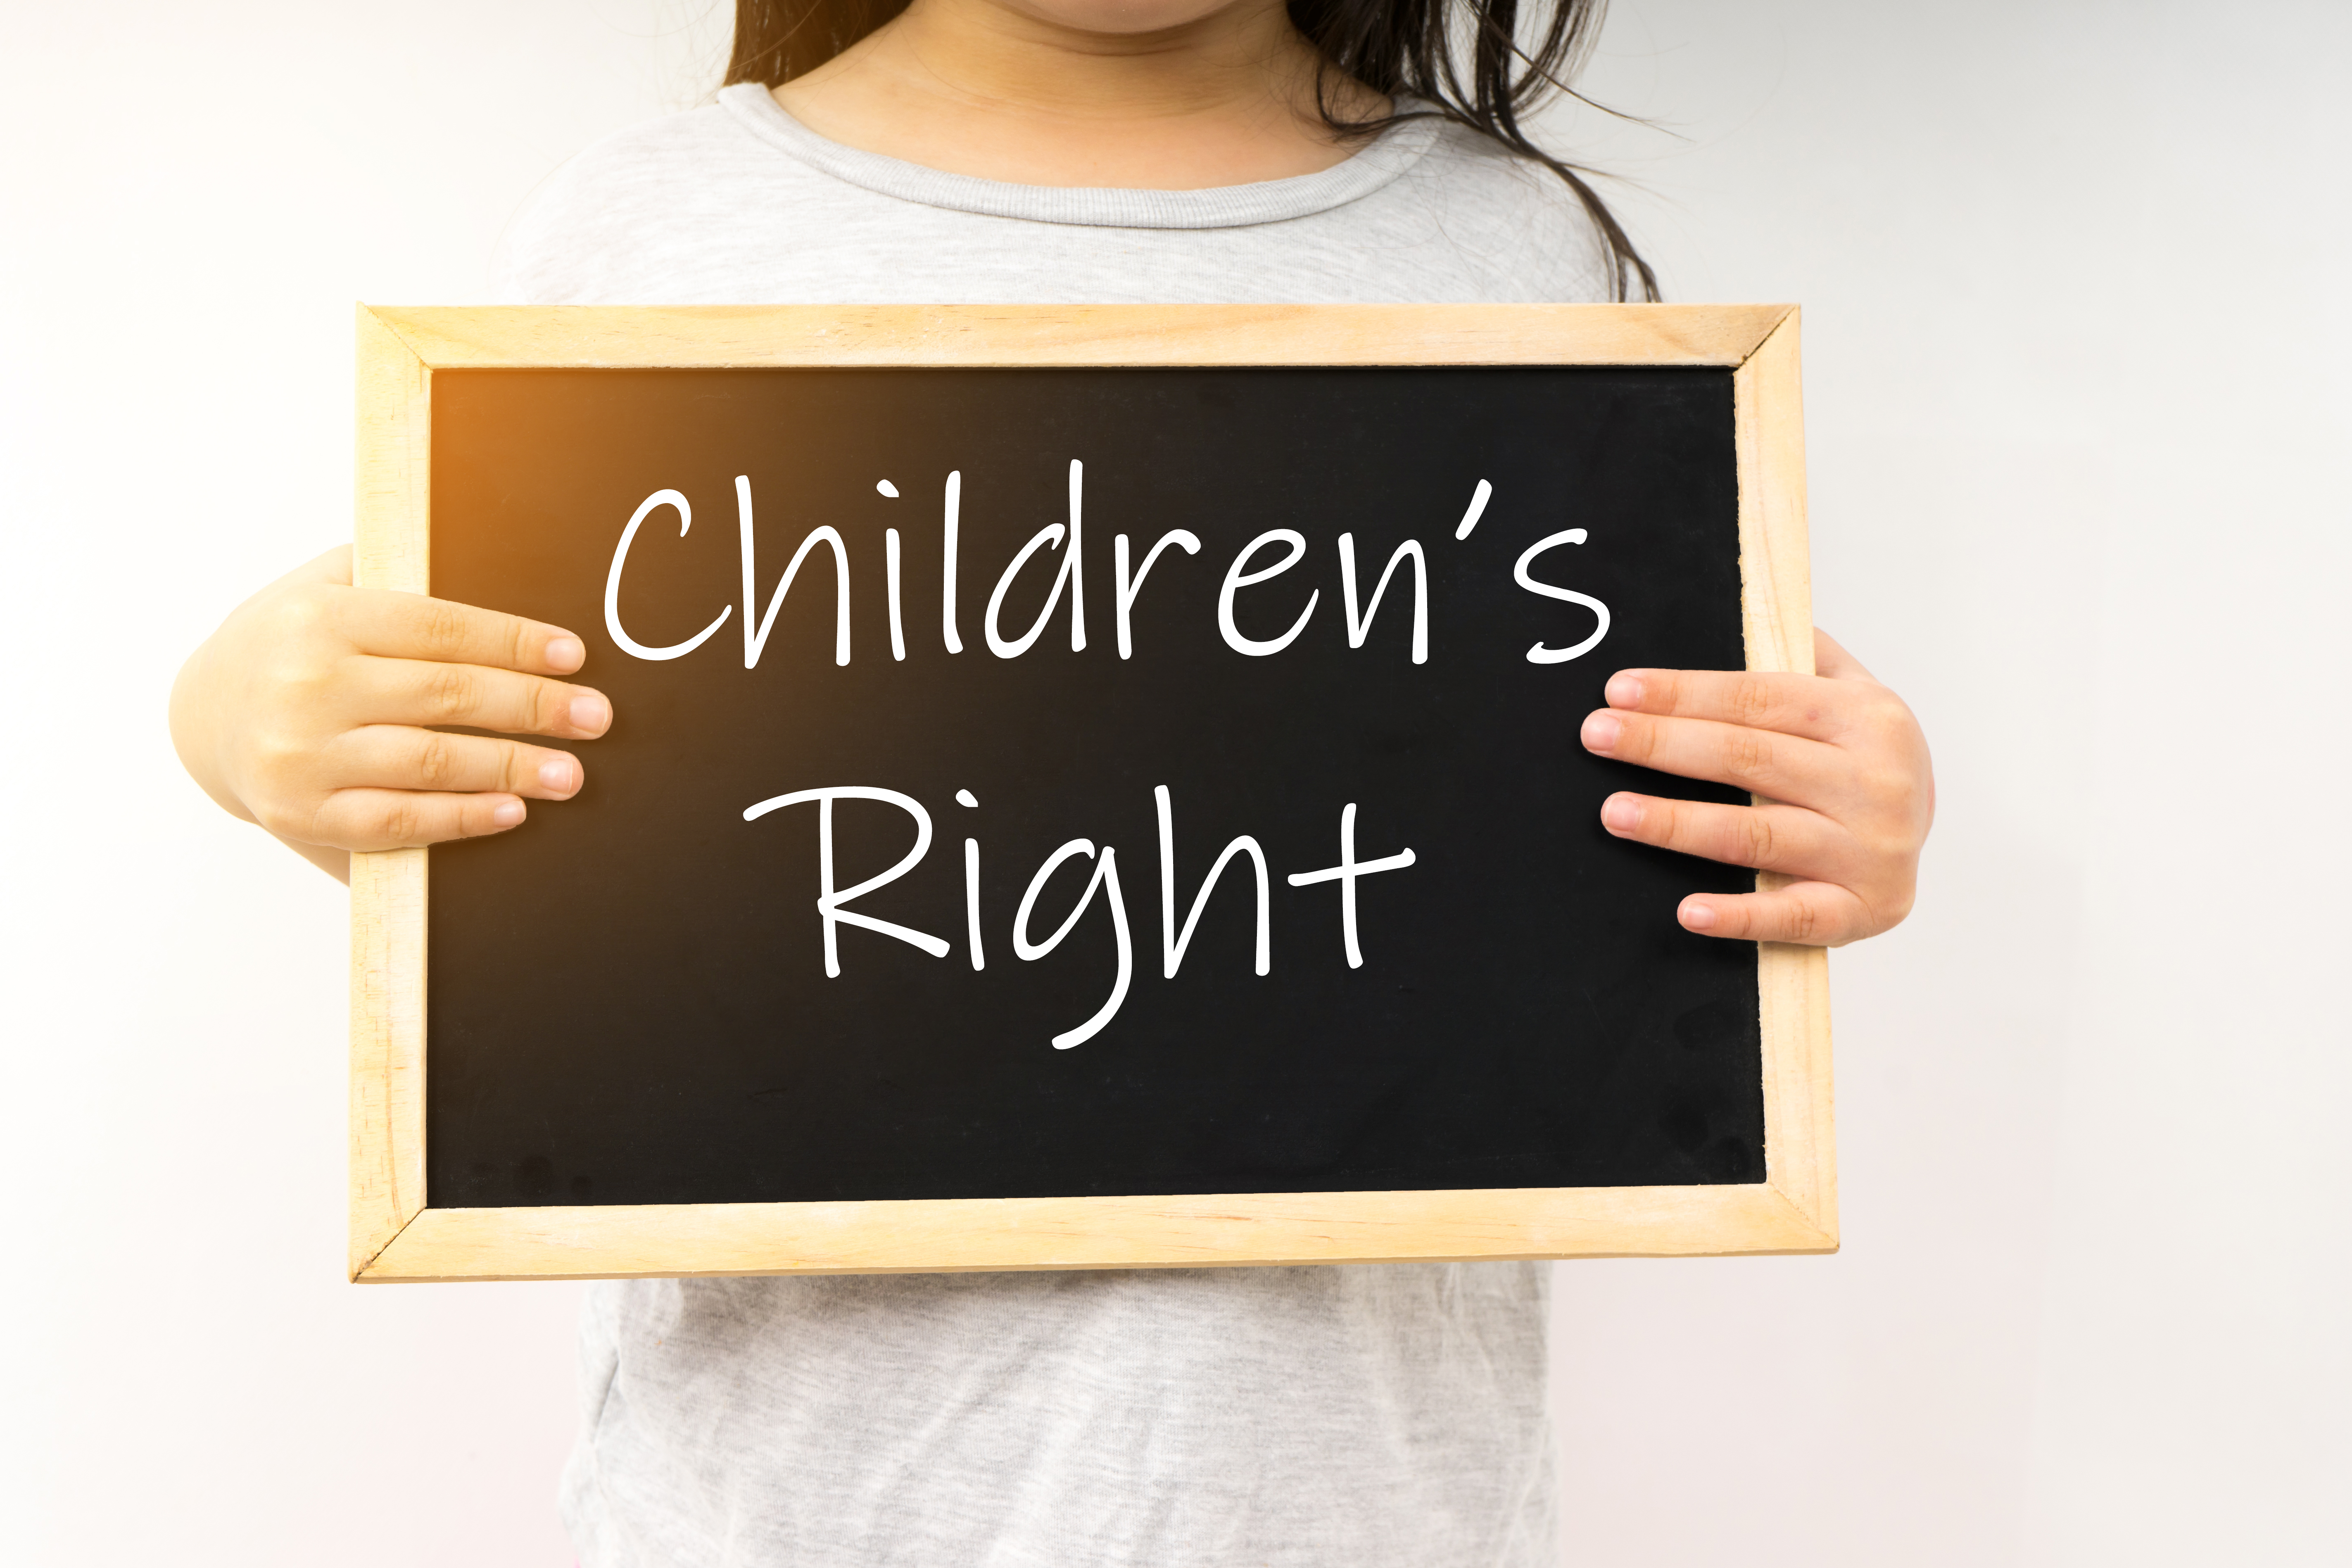 Childrens Rights.jpg